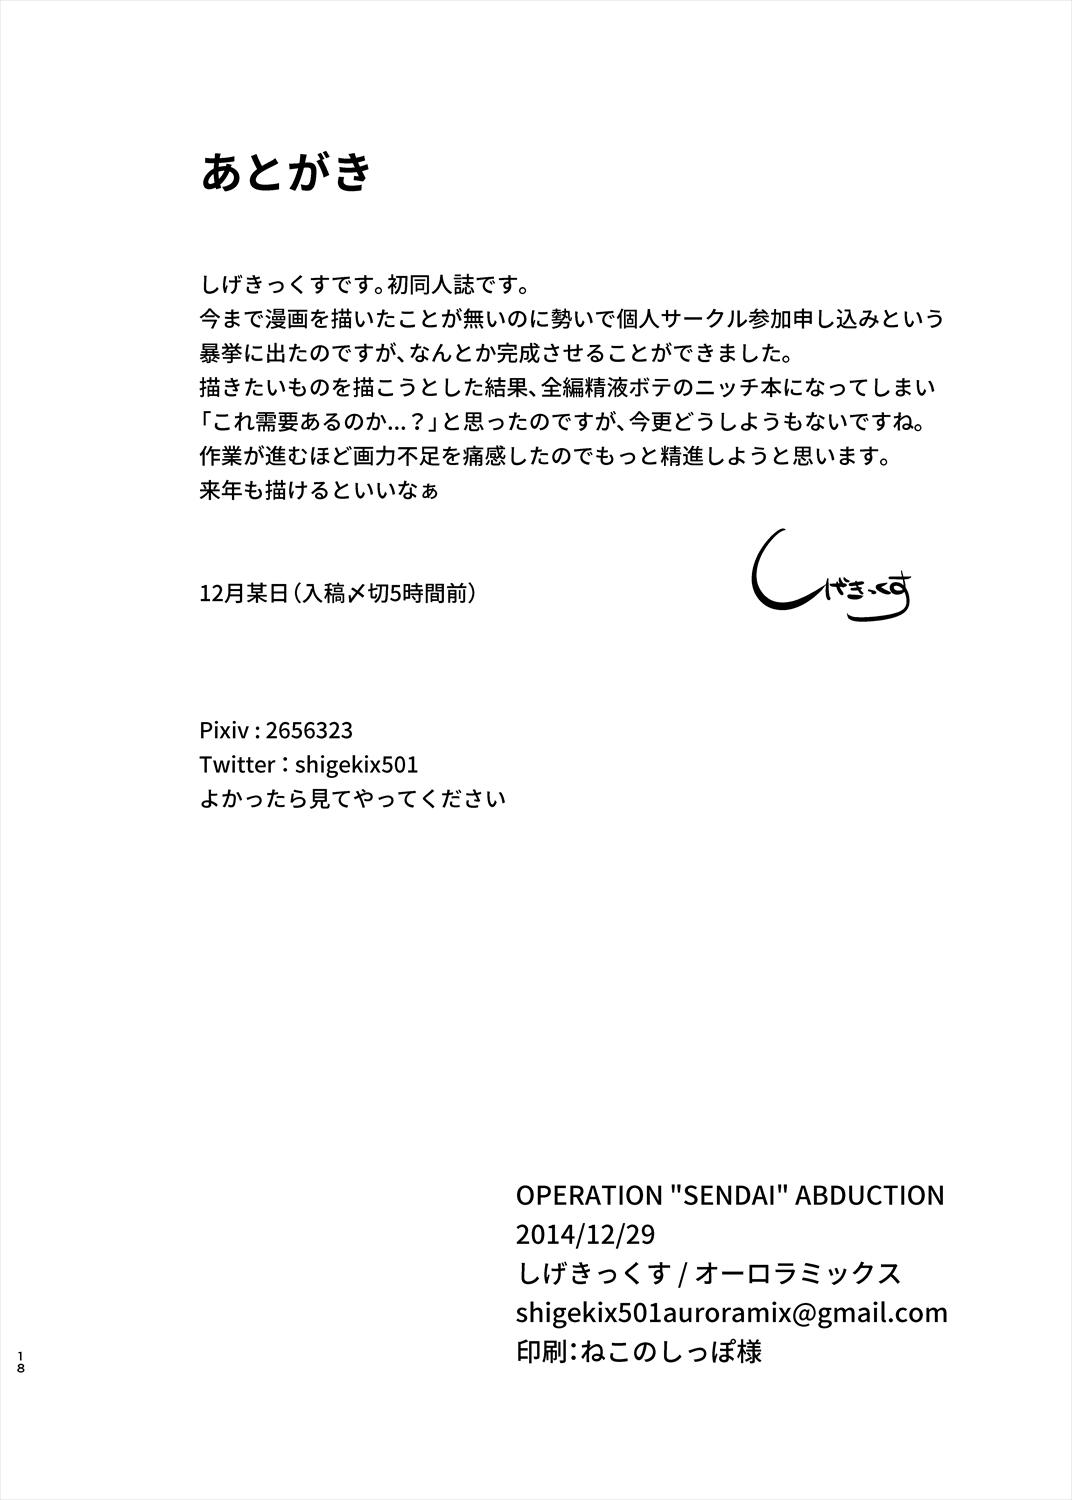 Operation "Sendai" Abduction 16